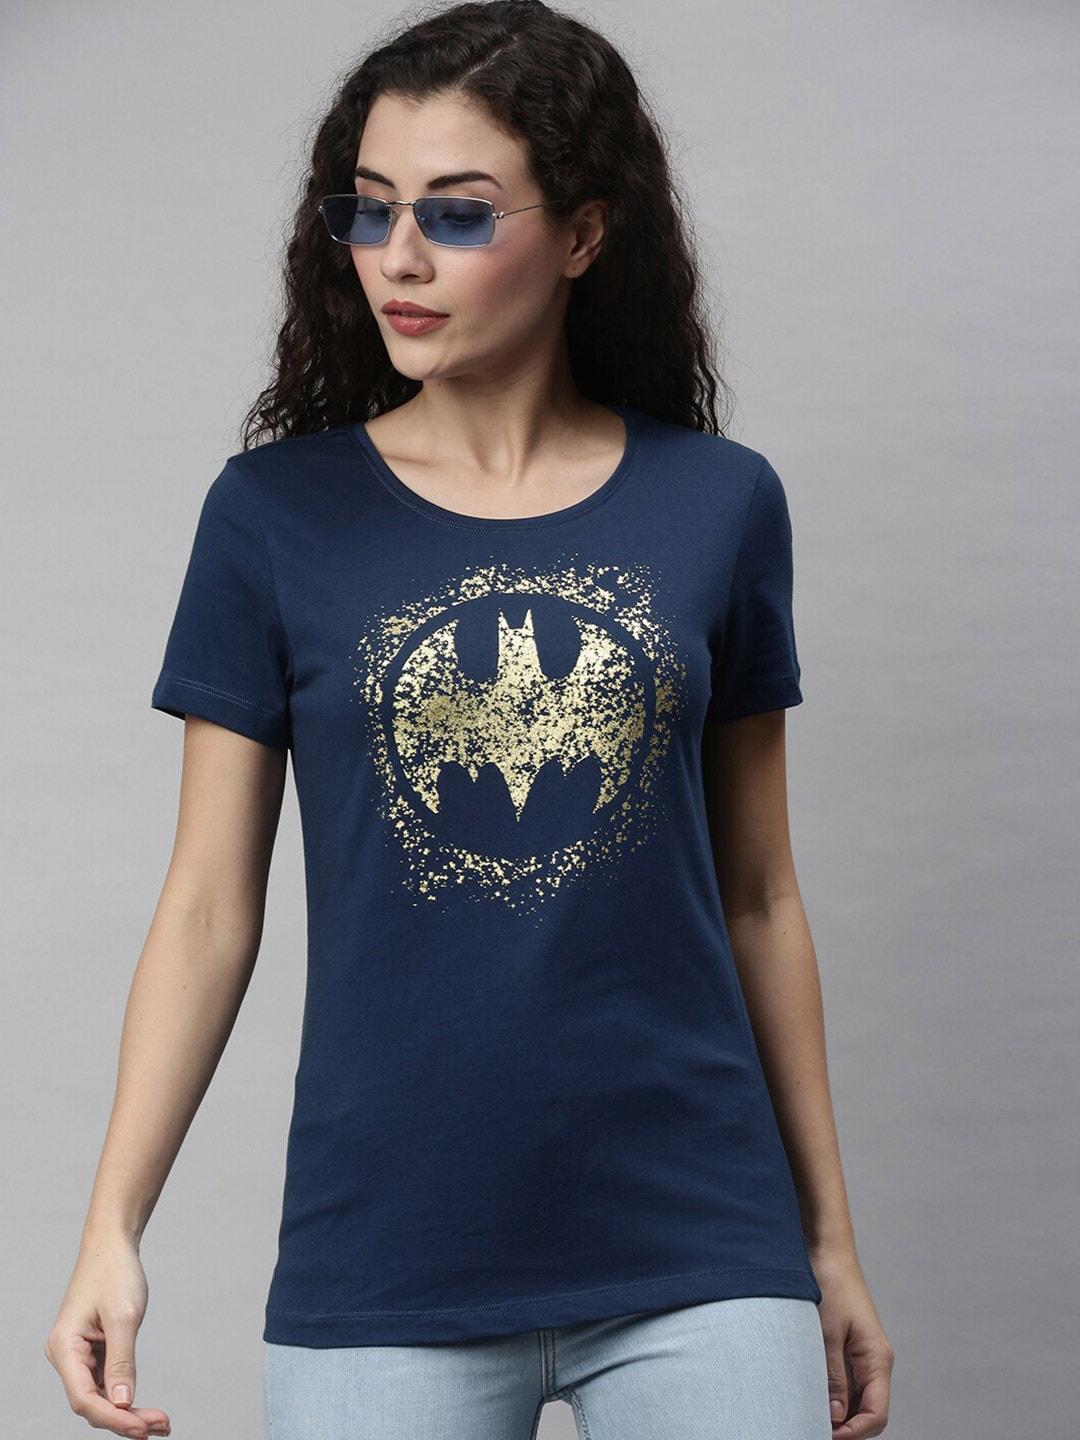 kook n keech batman women navy blue batman printed cotton t-shirt